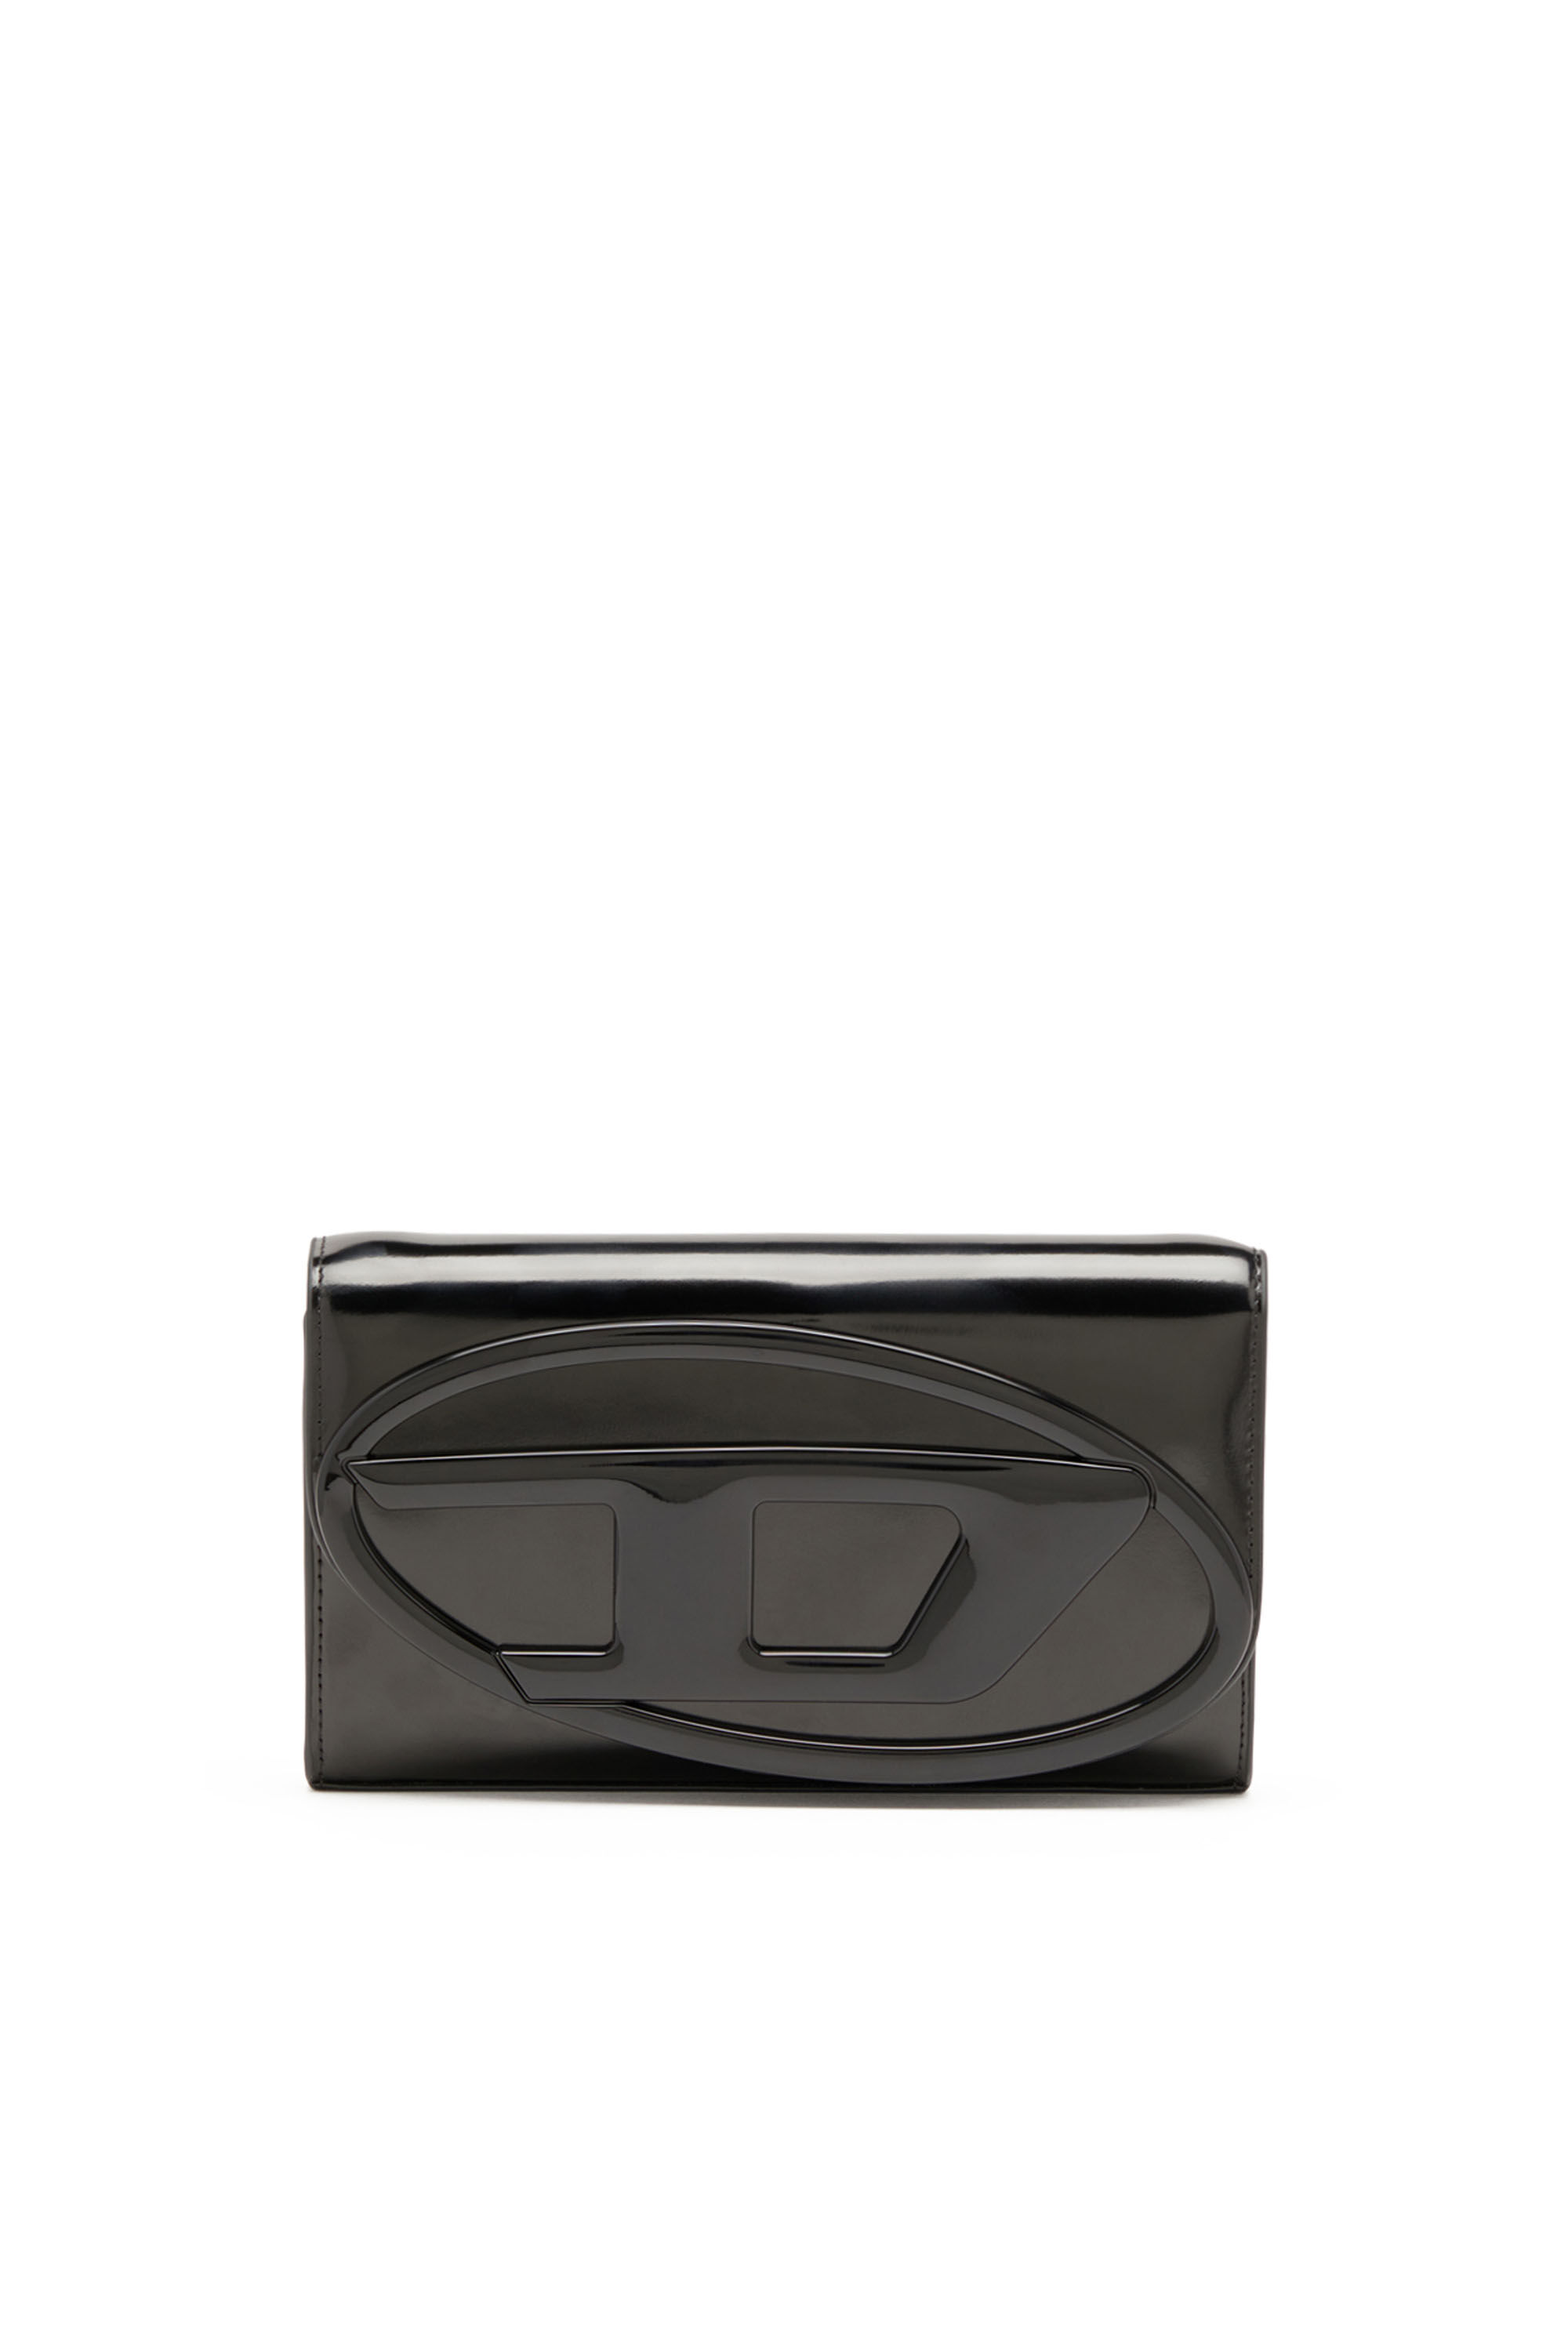 Women's Wallet bag in mirrored leather | Black | Diesel